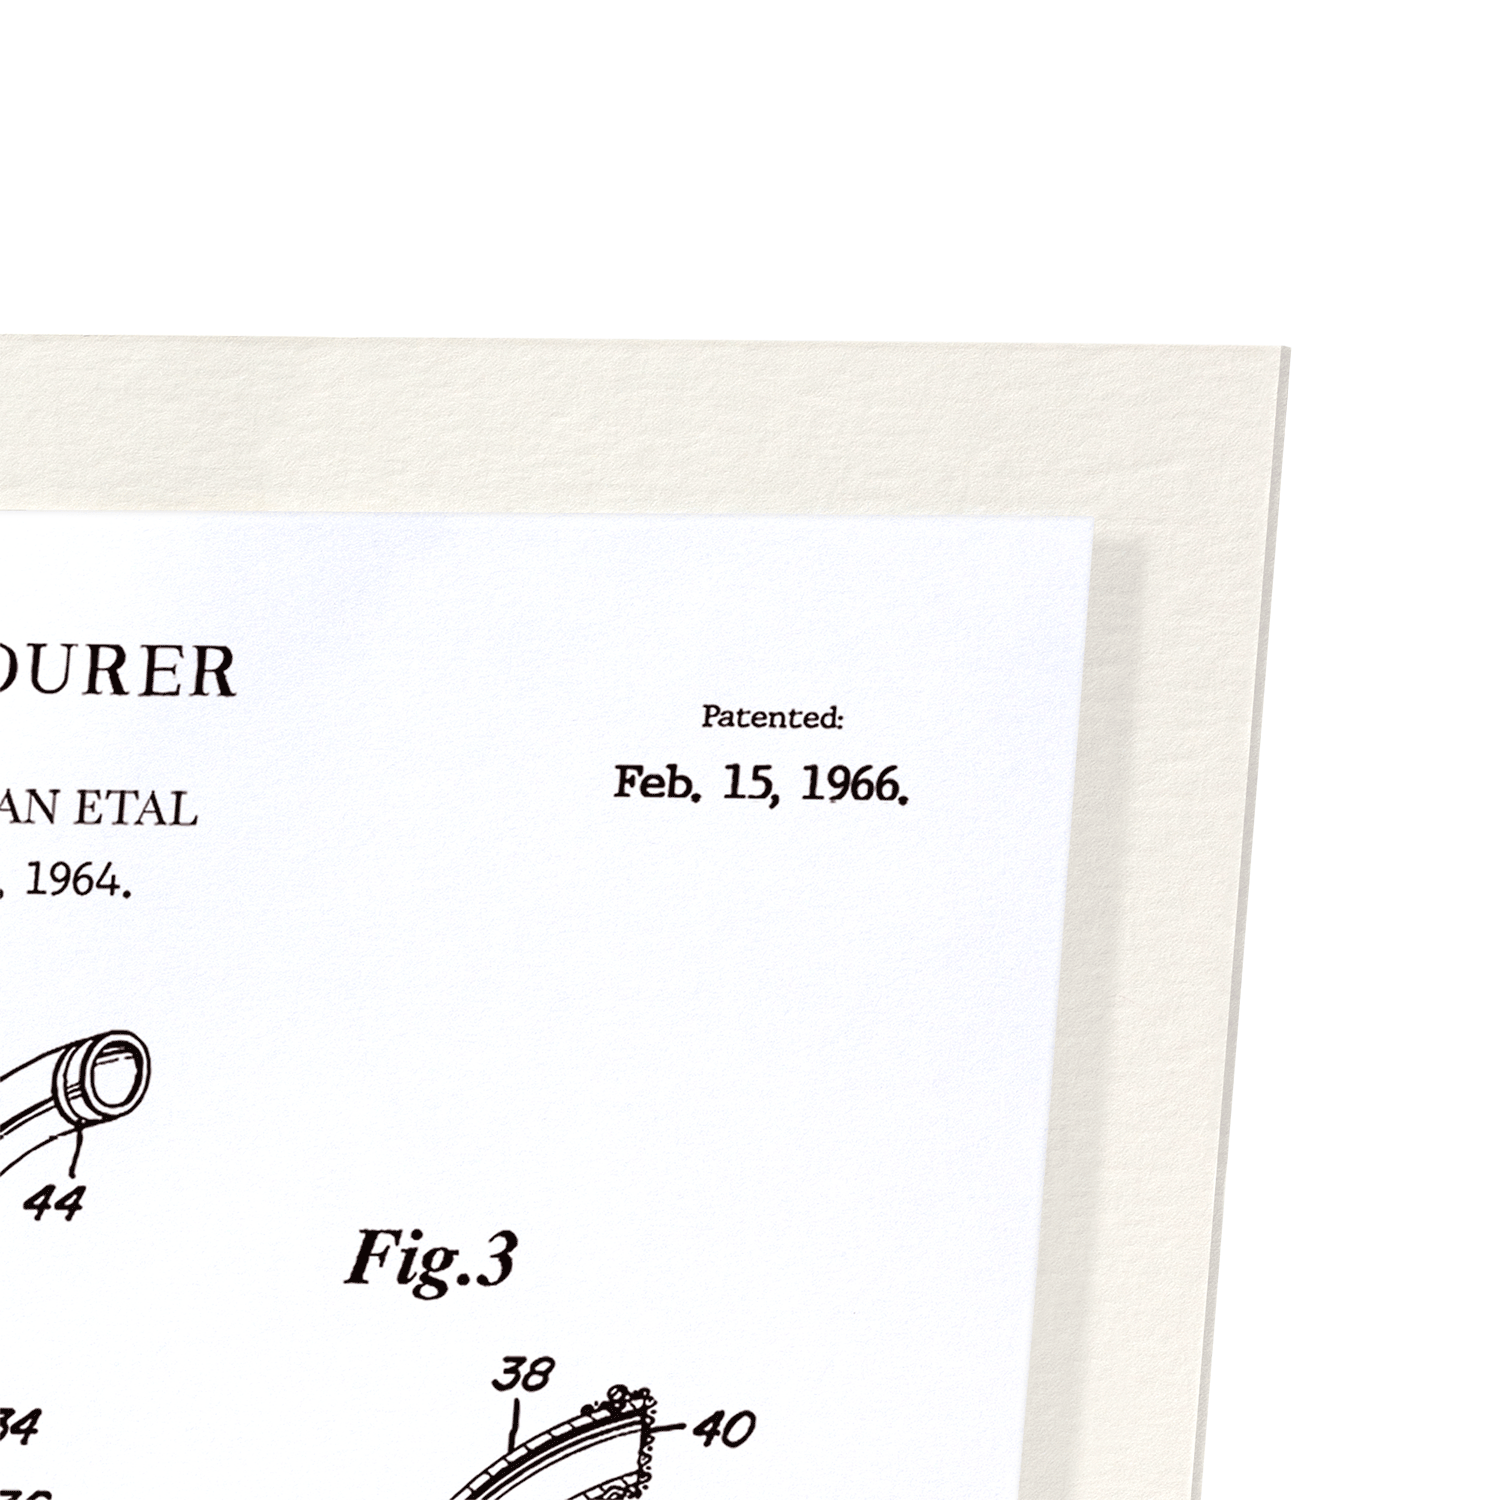 PATENT OF BOTTLE POURER (1966): Patent Art Print